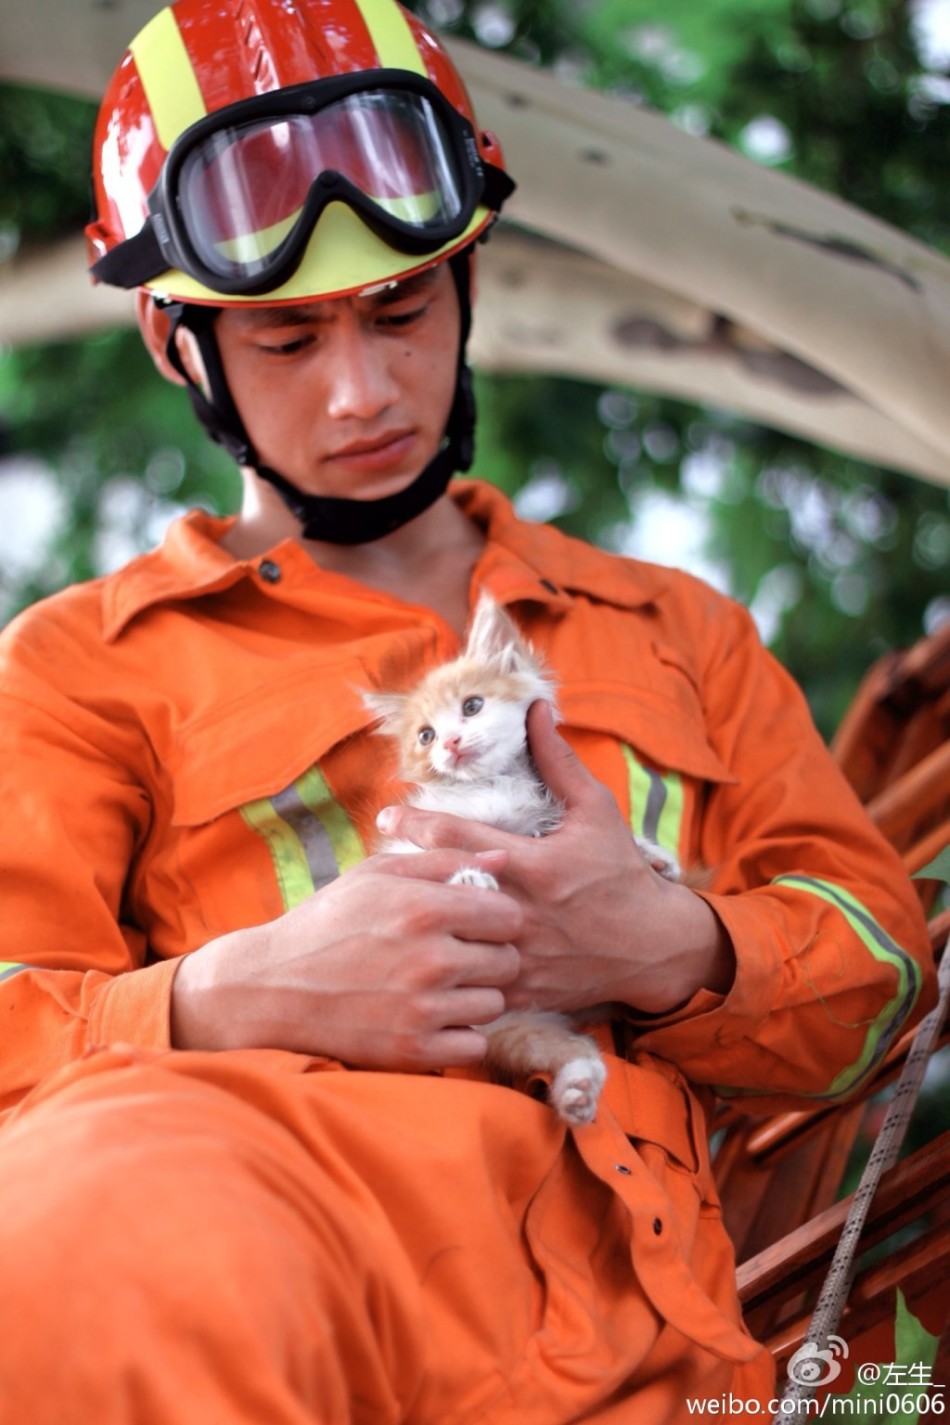 萌猫硬汉组合消防员爬树救猫照暖人心